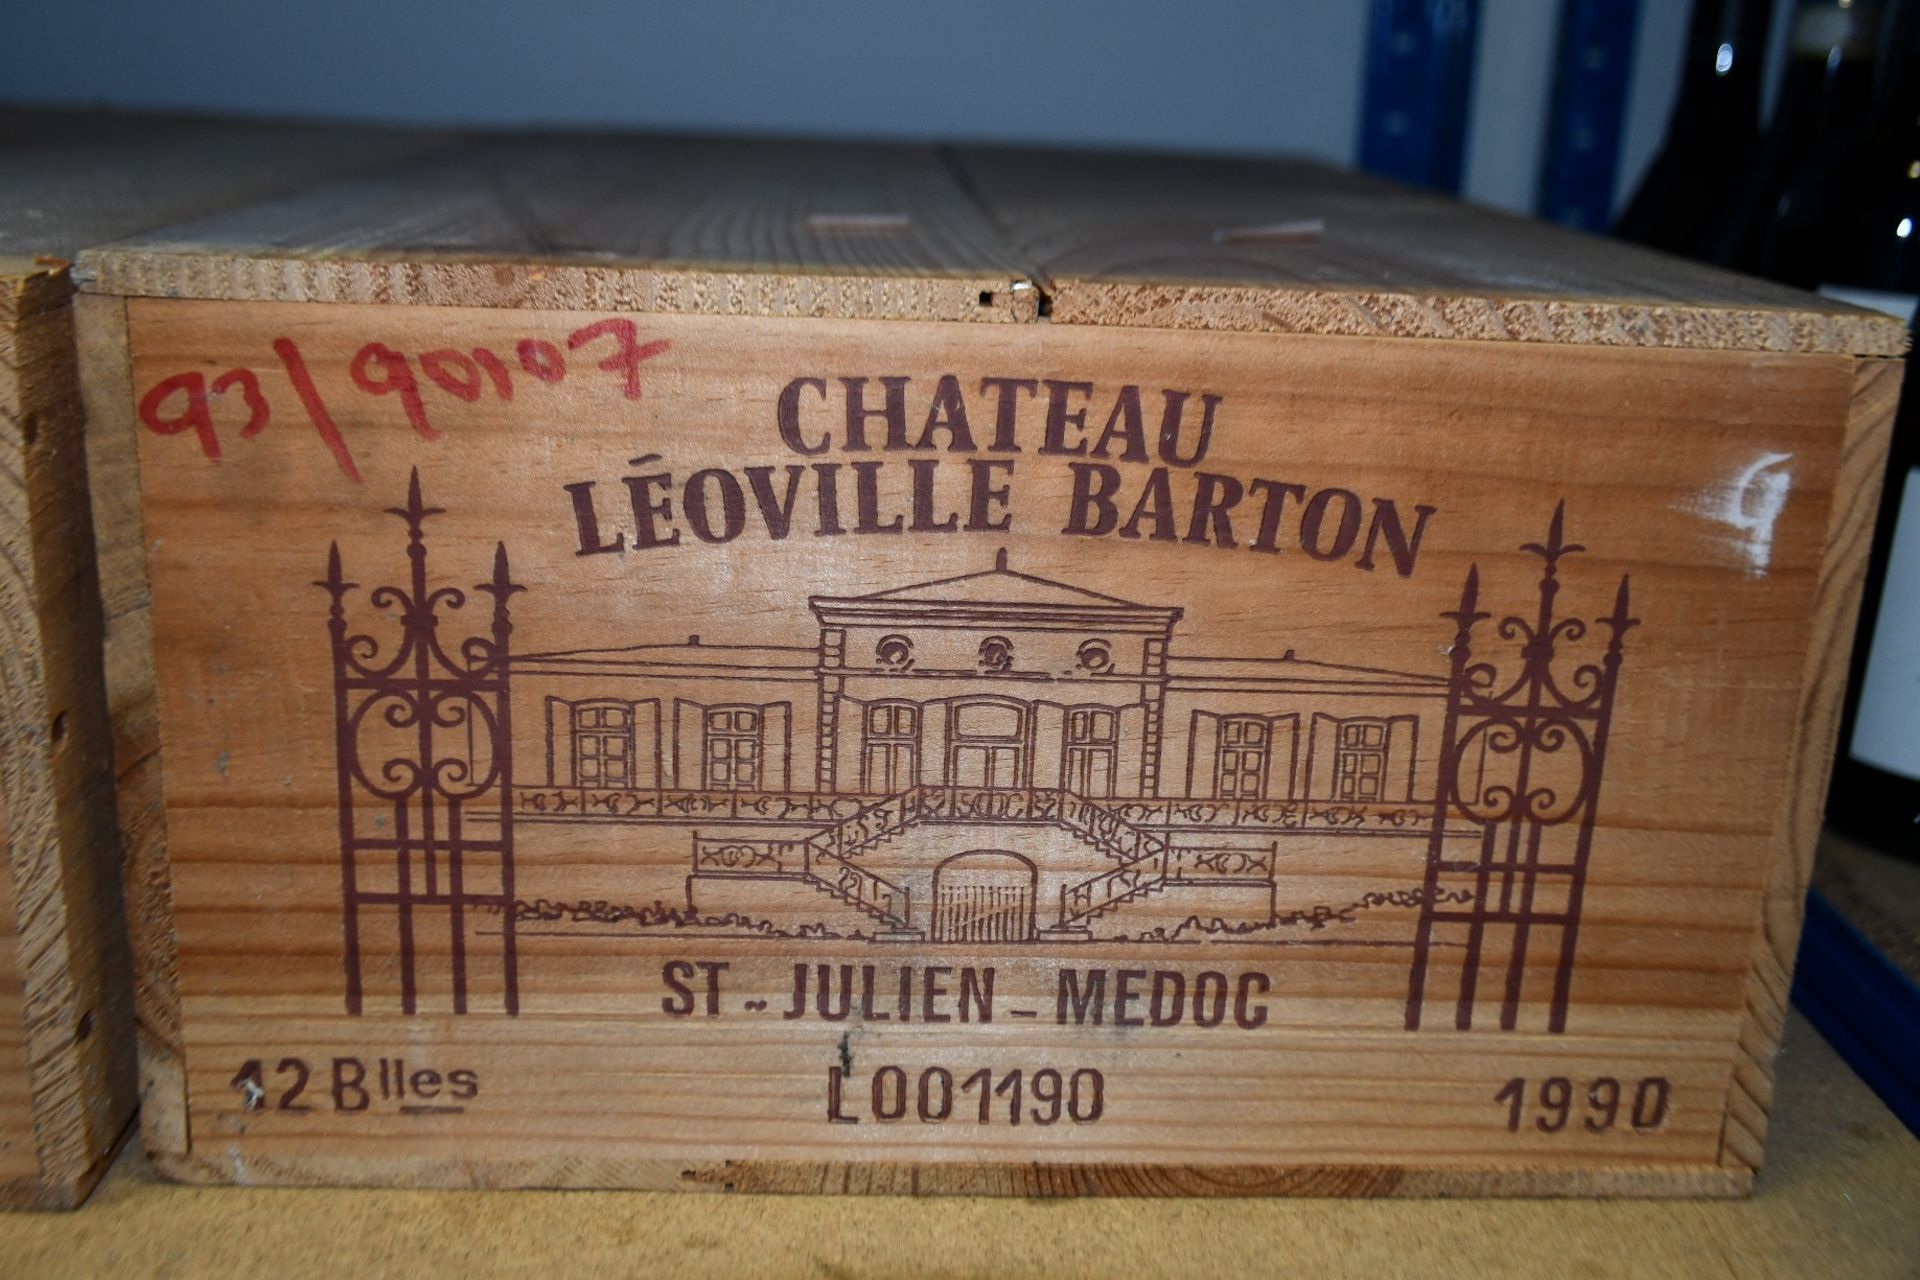 An unopened case of 1990 Chateau Leoville BartonSt Julien-Medo (12 bottles) (Over 18s only).